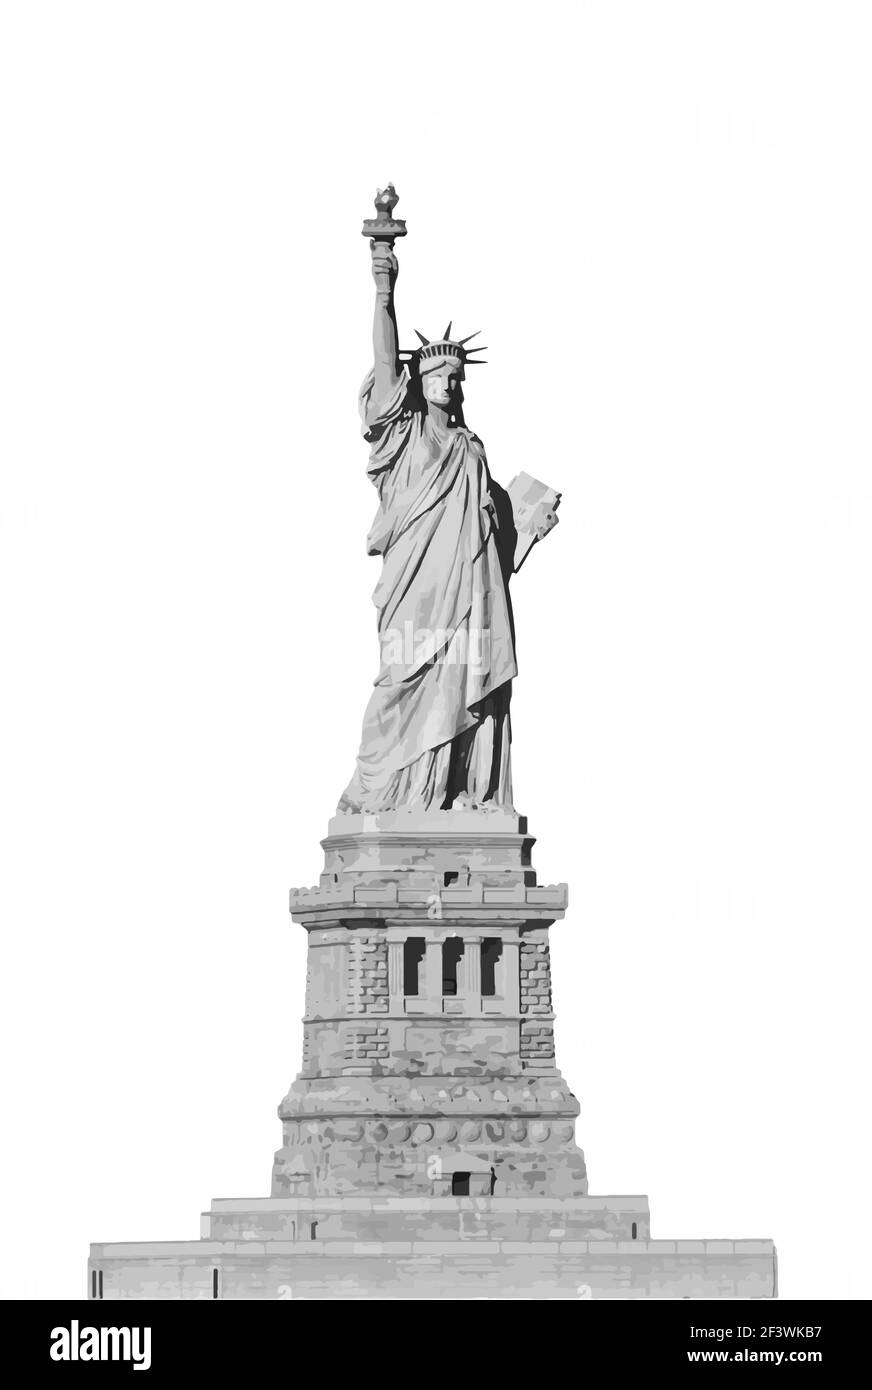 Tracé de vecteur Statue de la liberté Illustration monochrome noir et blanc sur fond blanc. Style plat. New York et USA site touristique. Américain nati Illustration de Vecteur